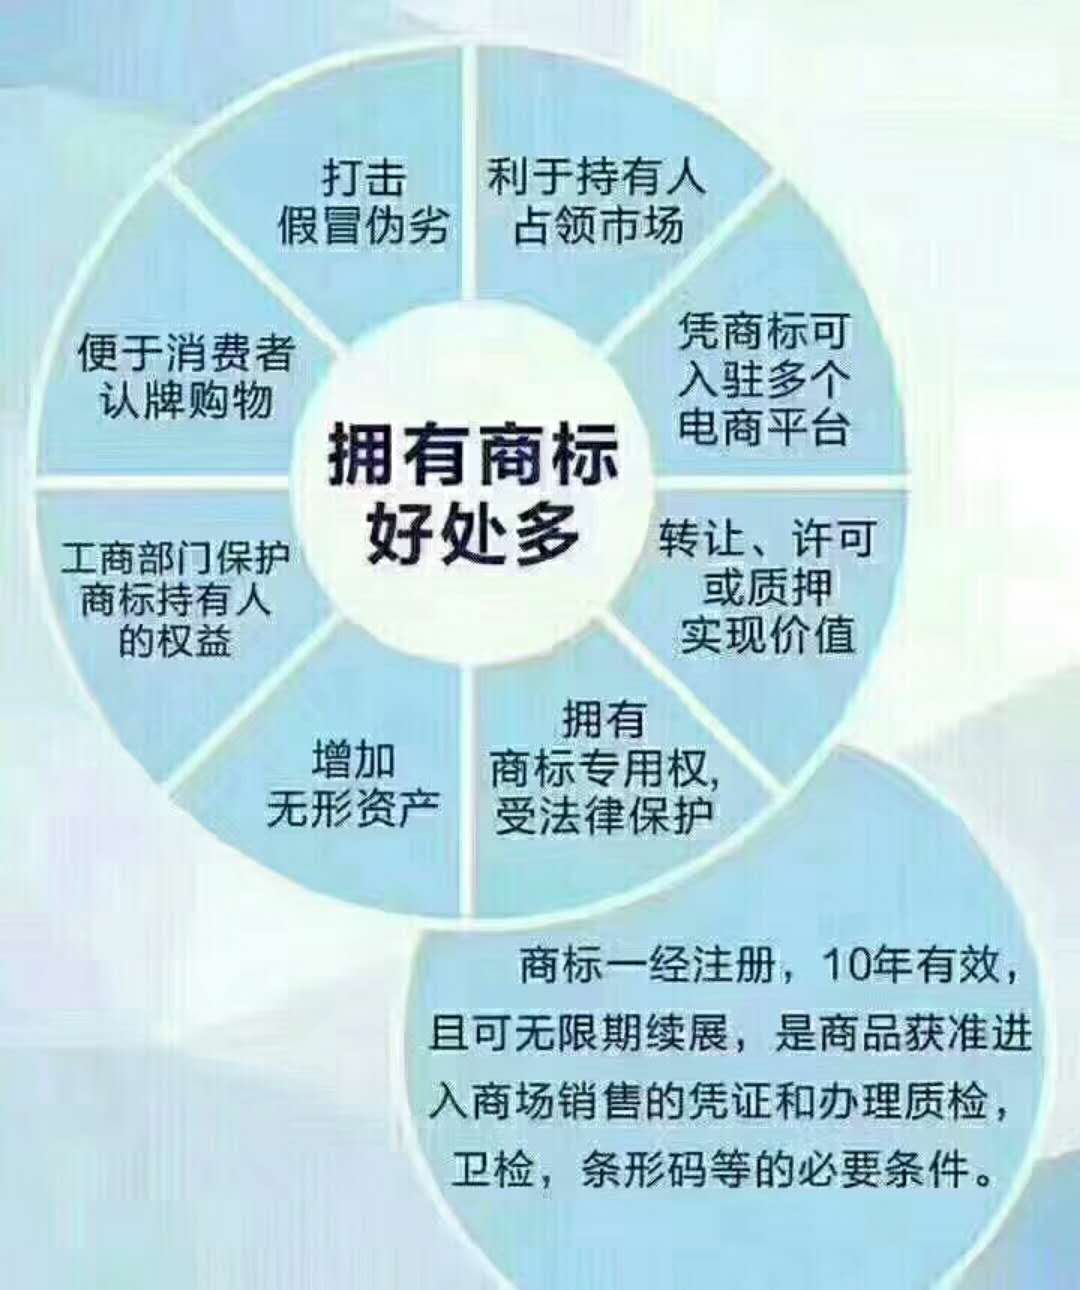 安庆市医疗器械商标在哪里申请？安庆市医疗用品申请商标